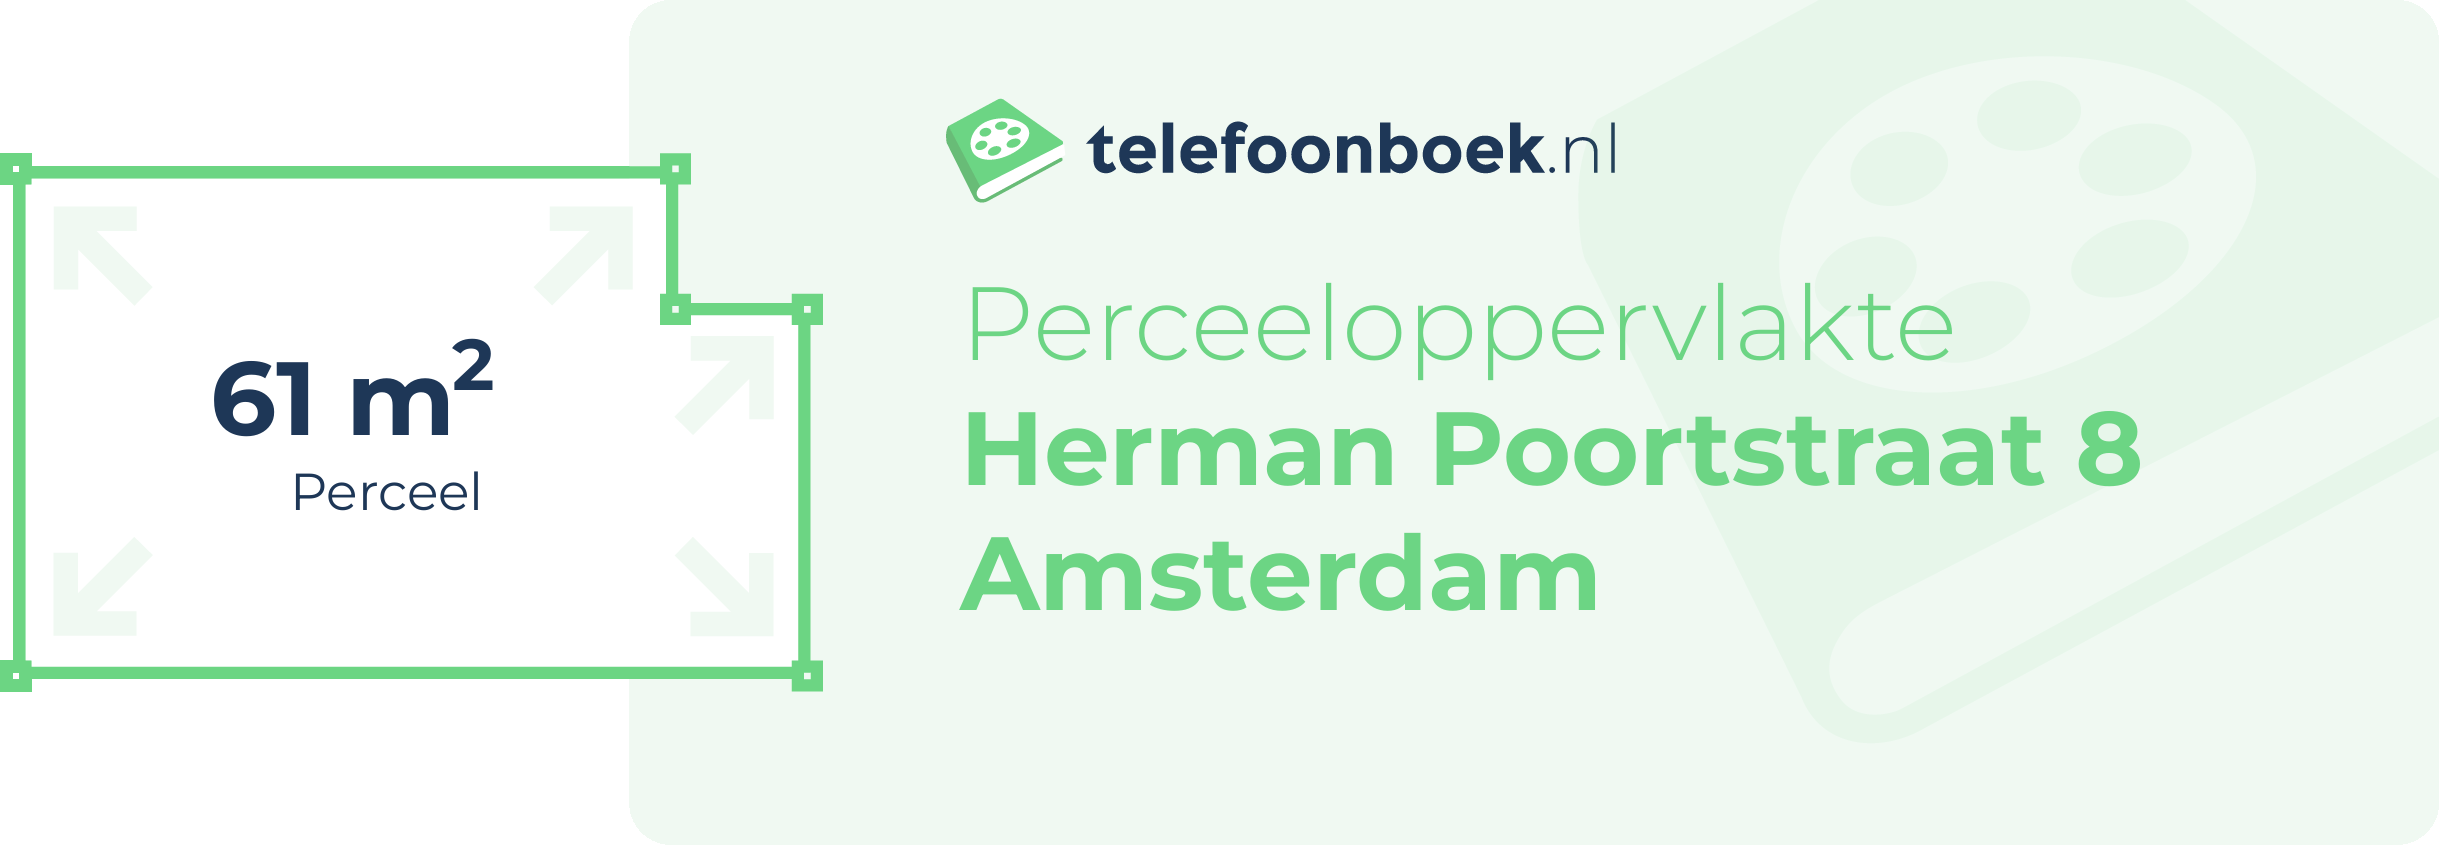 Perceeloppervlakte Herman Poortstraat 8 Amsterdam